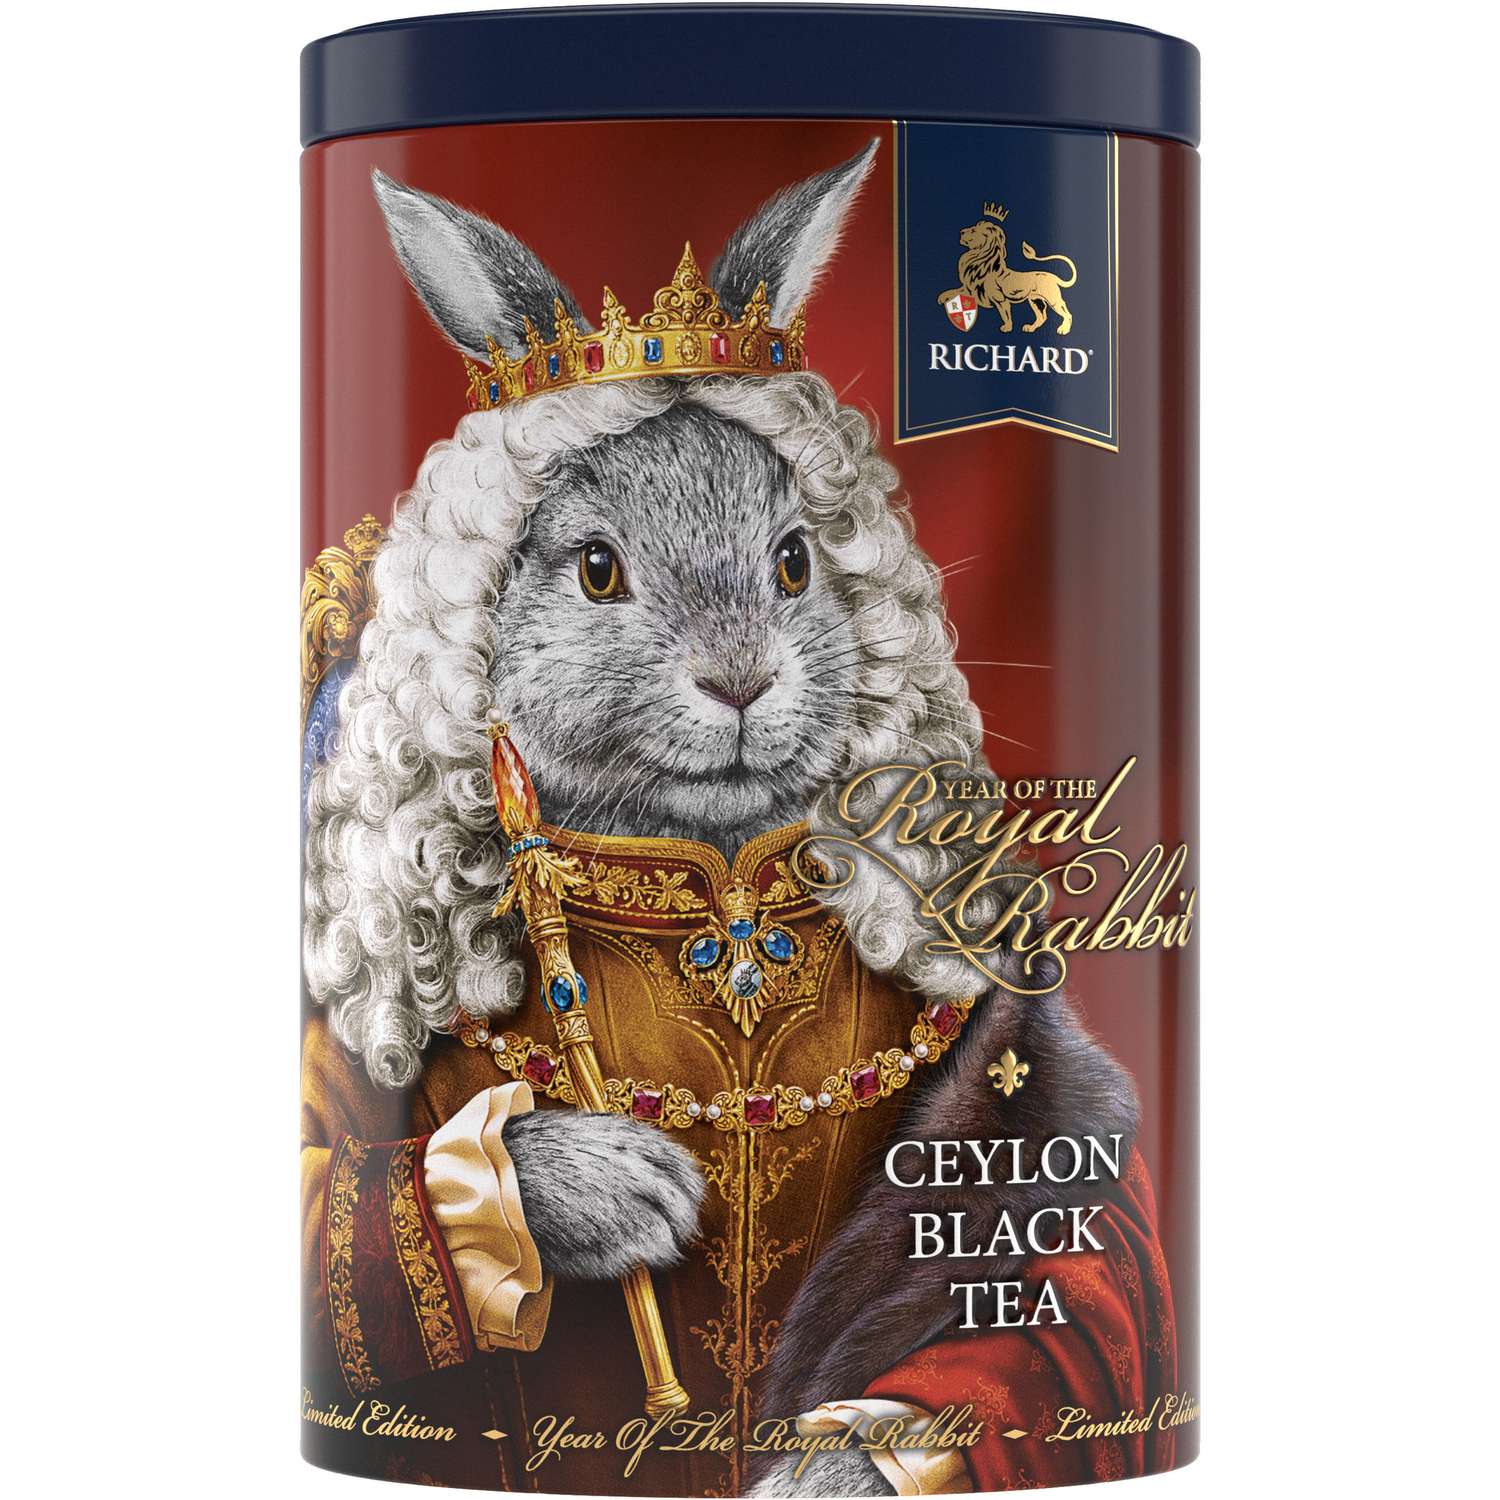 Чай черный крупнолистовой Richard Year of the Royal Rabbit с символом нового года король 80 гр - фото 1